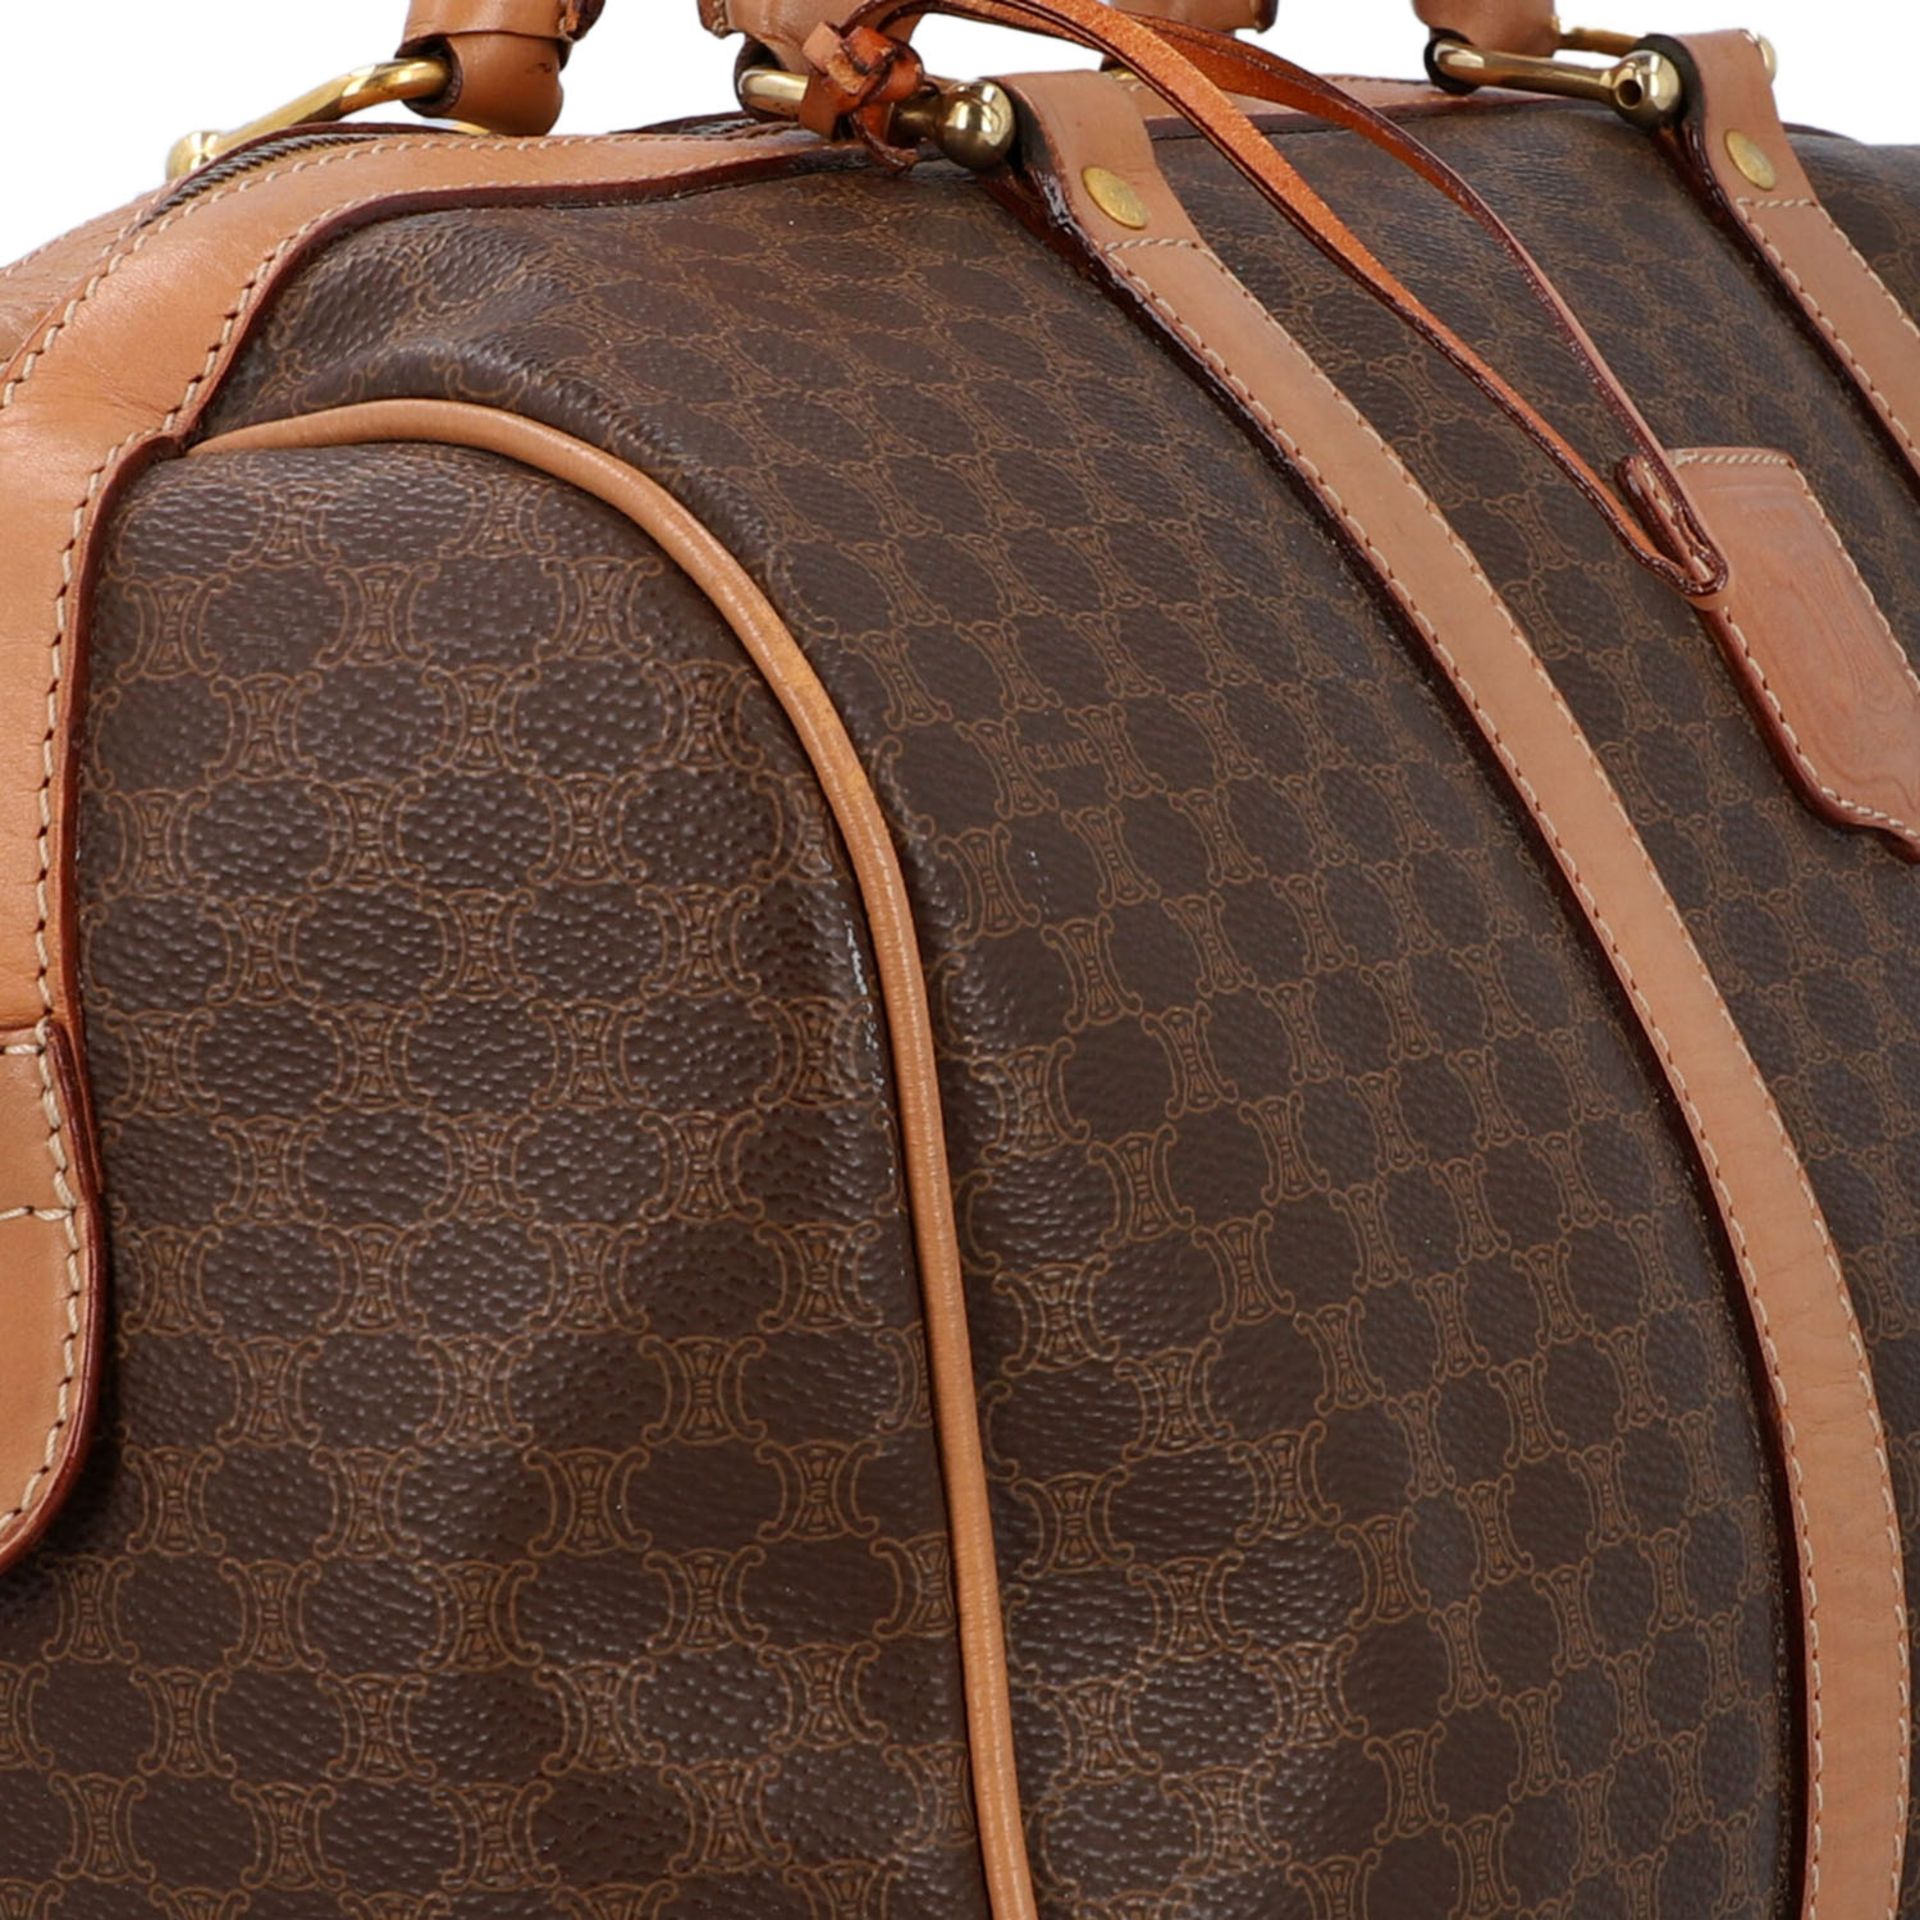 CELINE Handtasche.Logomuster auf dunkelbraunem Grund mit hellbraunem Leder. Front mit - Bild 8 aus 8